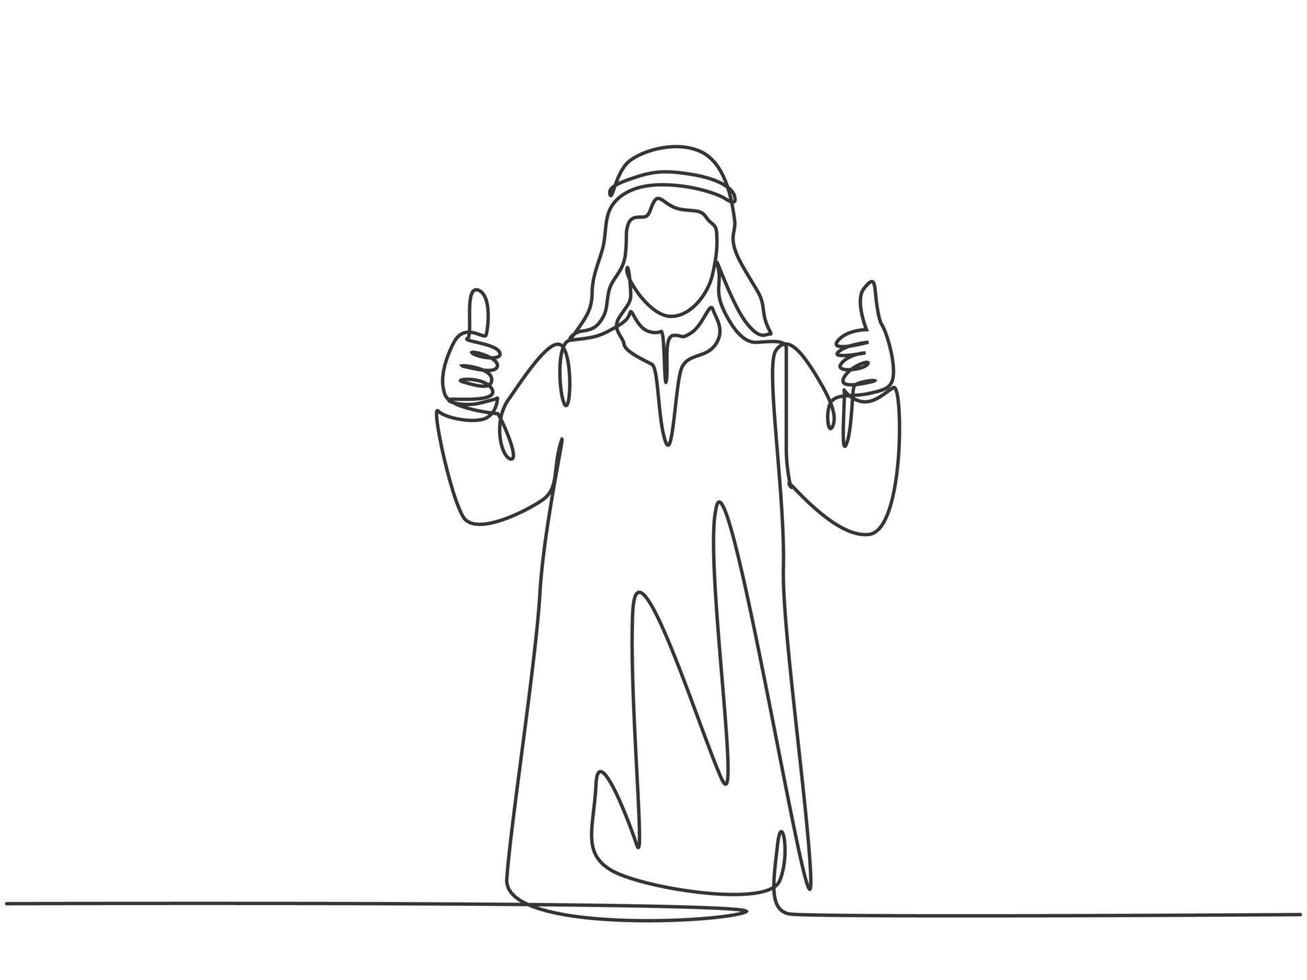 un unico disegno a tratteggio di un giovane membro del team di avvio musulmano felice che dà il gesto del pollice in su. shmag di stoffa dell'arabia saudita, kandora, foulard, thobe, ghutra. illustrazione vettoriale di disegno di disegno di linea continua